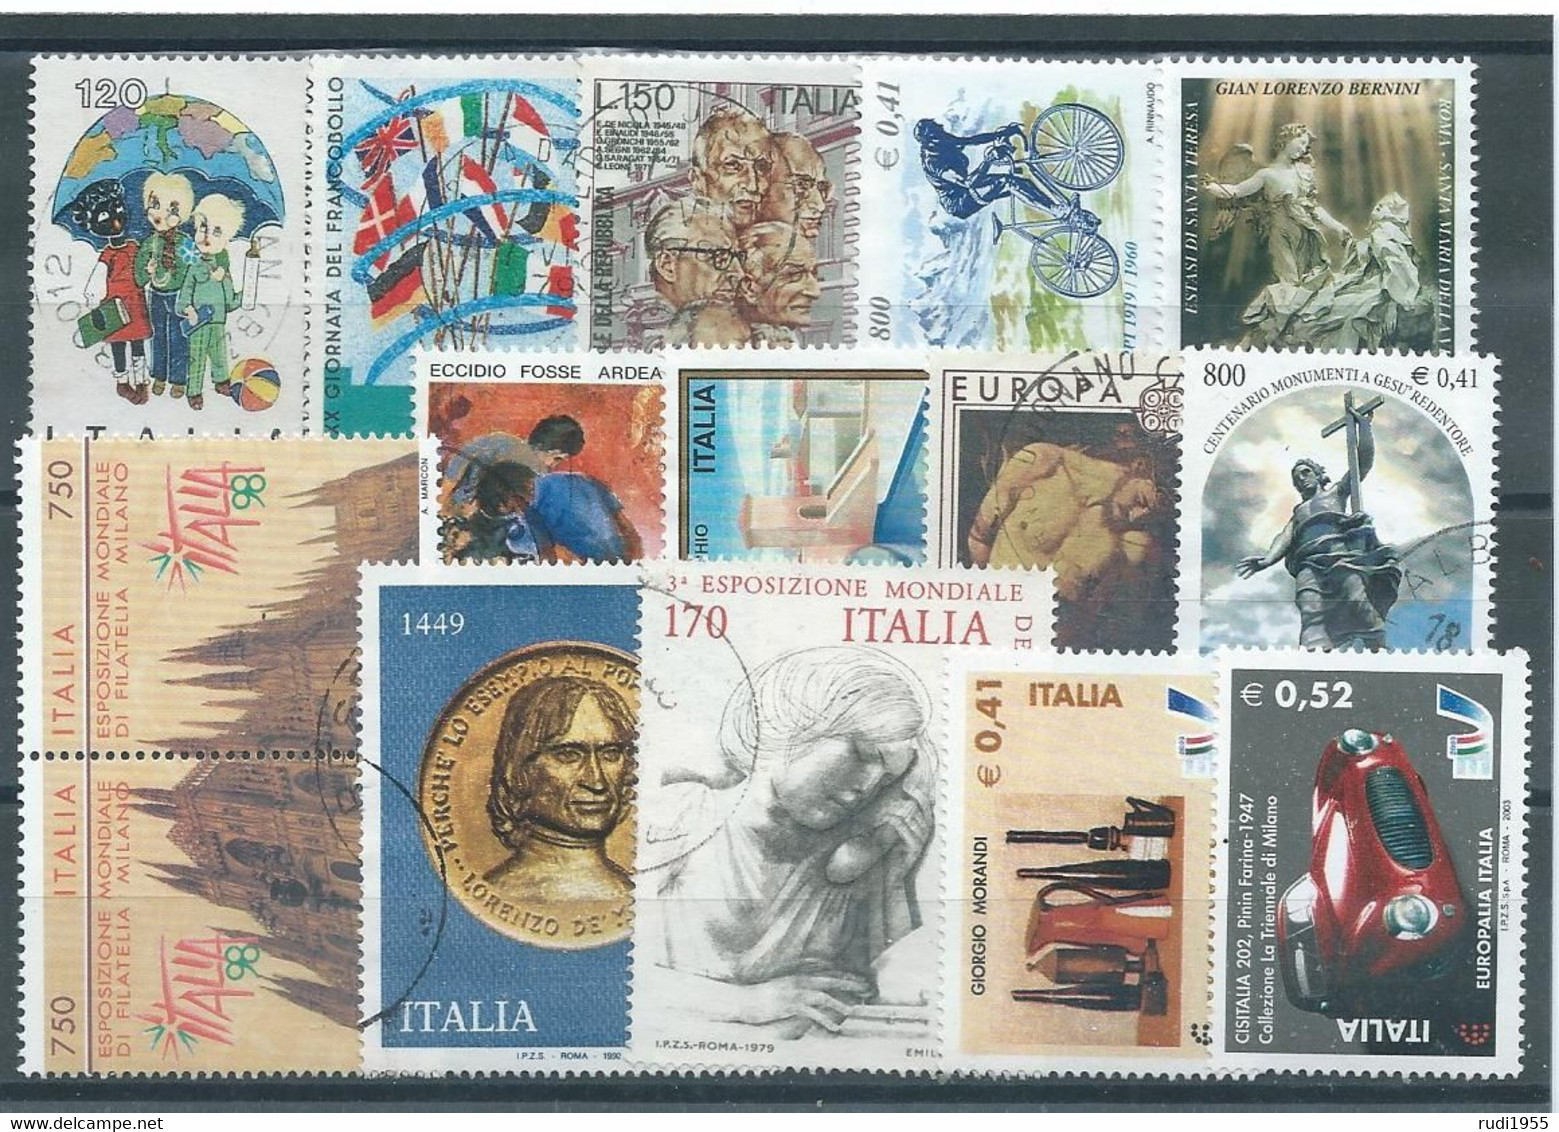 ITALIEN LOT Gestempelt Siehe Scan - Lots & Kiloware (mixtures) - Max. 999 Stamps